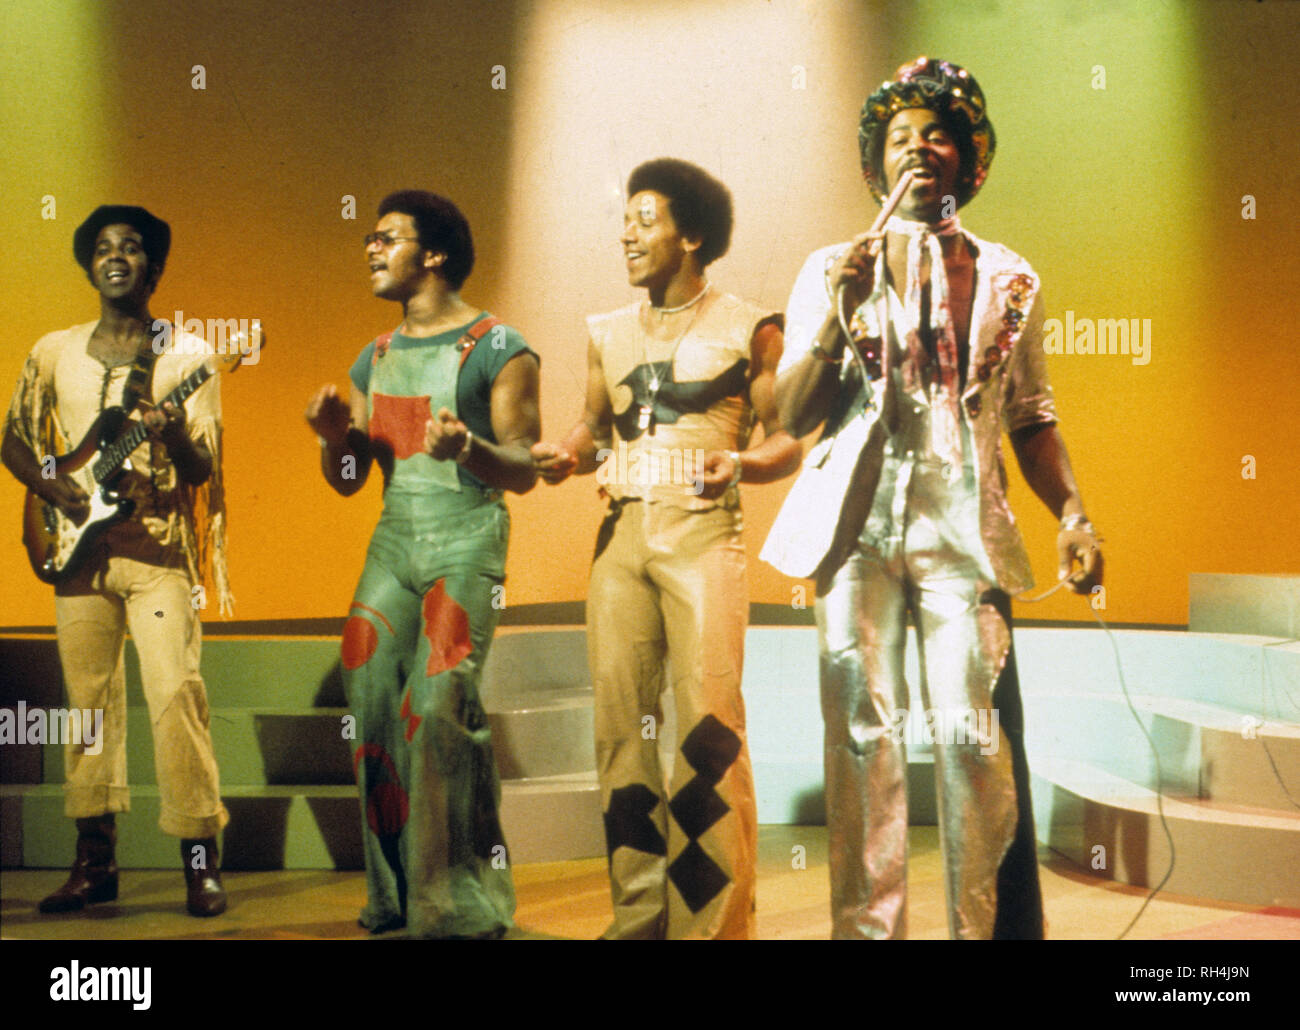 La cosa reale UK anima gruppo circa 1976 con Chris Amoo a destra Foto Stock